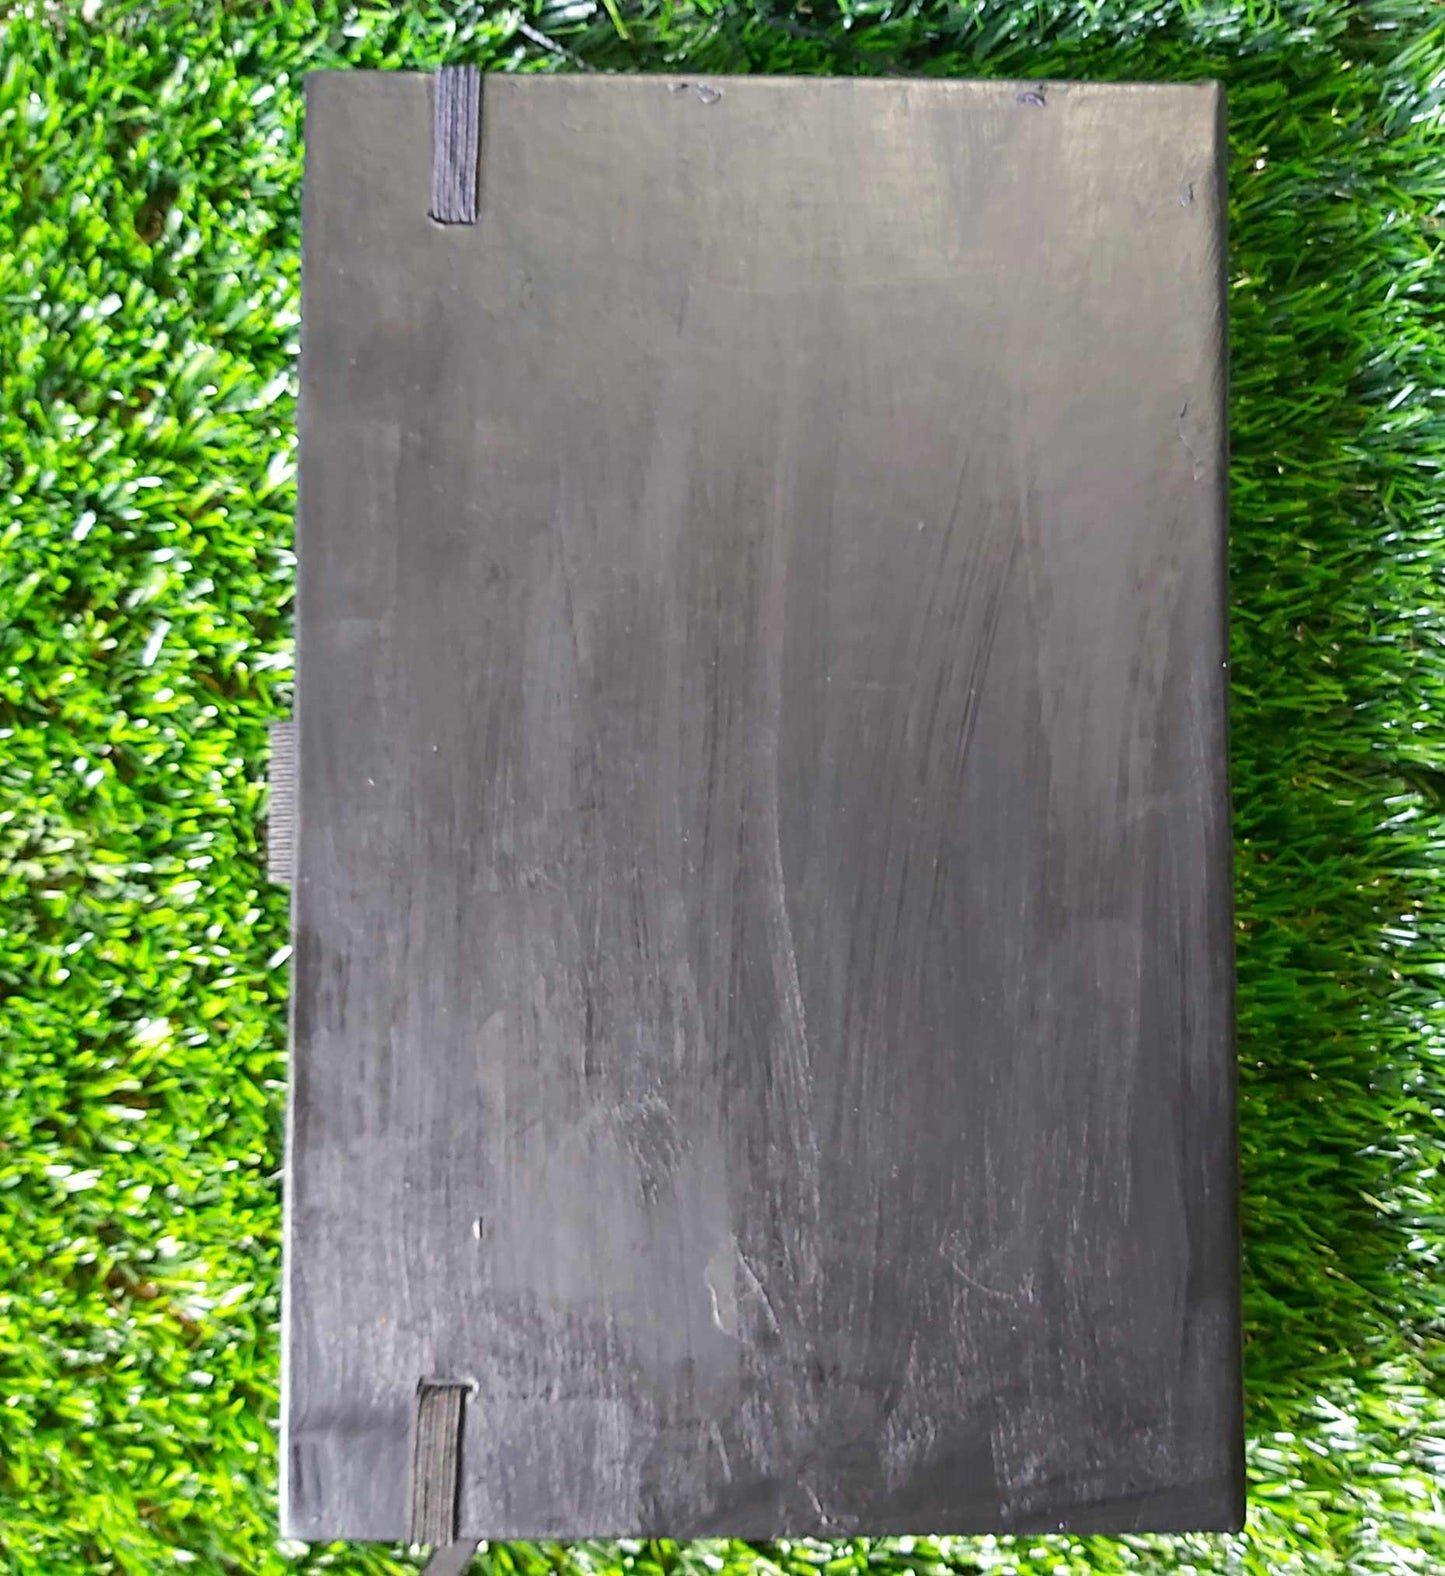 Handmade Gemstone Journal -Diary-Notebook with White Quartz